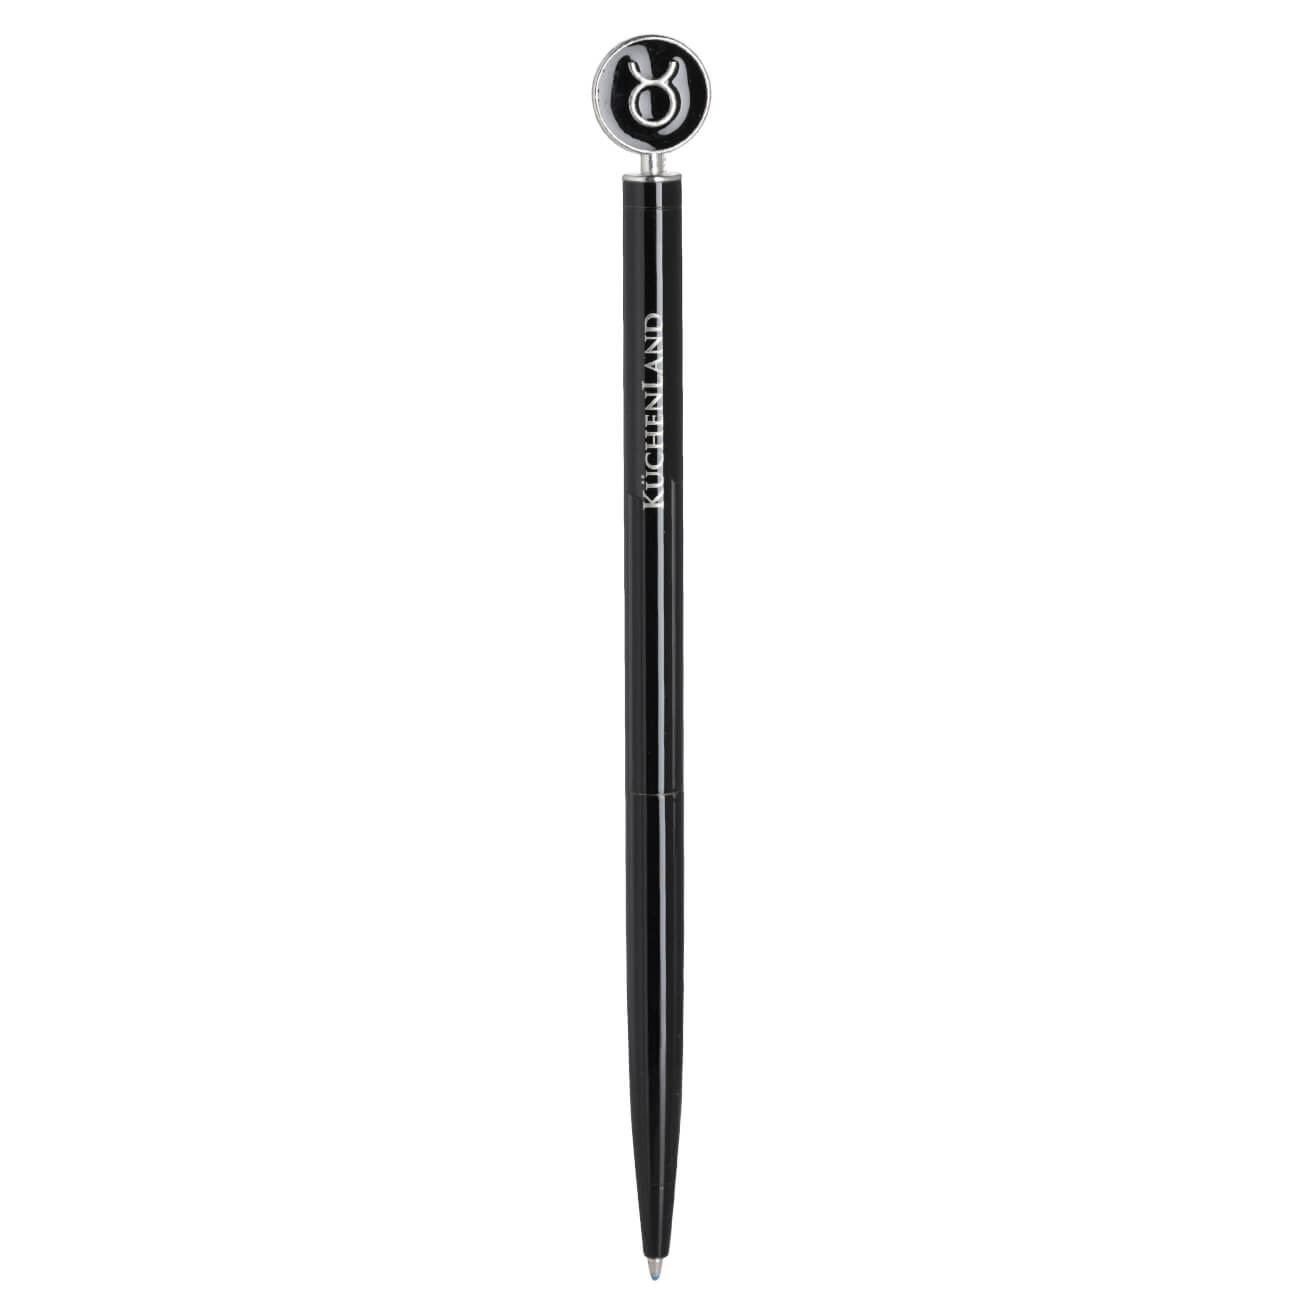 Ручка шариковая, 15 см, с фигуркой, сталь, черно-серебристая, Телец, Zodiac ручка подарочная шариковая поворотная в пластиковом футляре